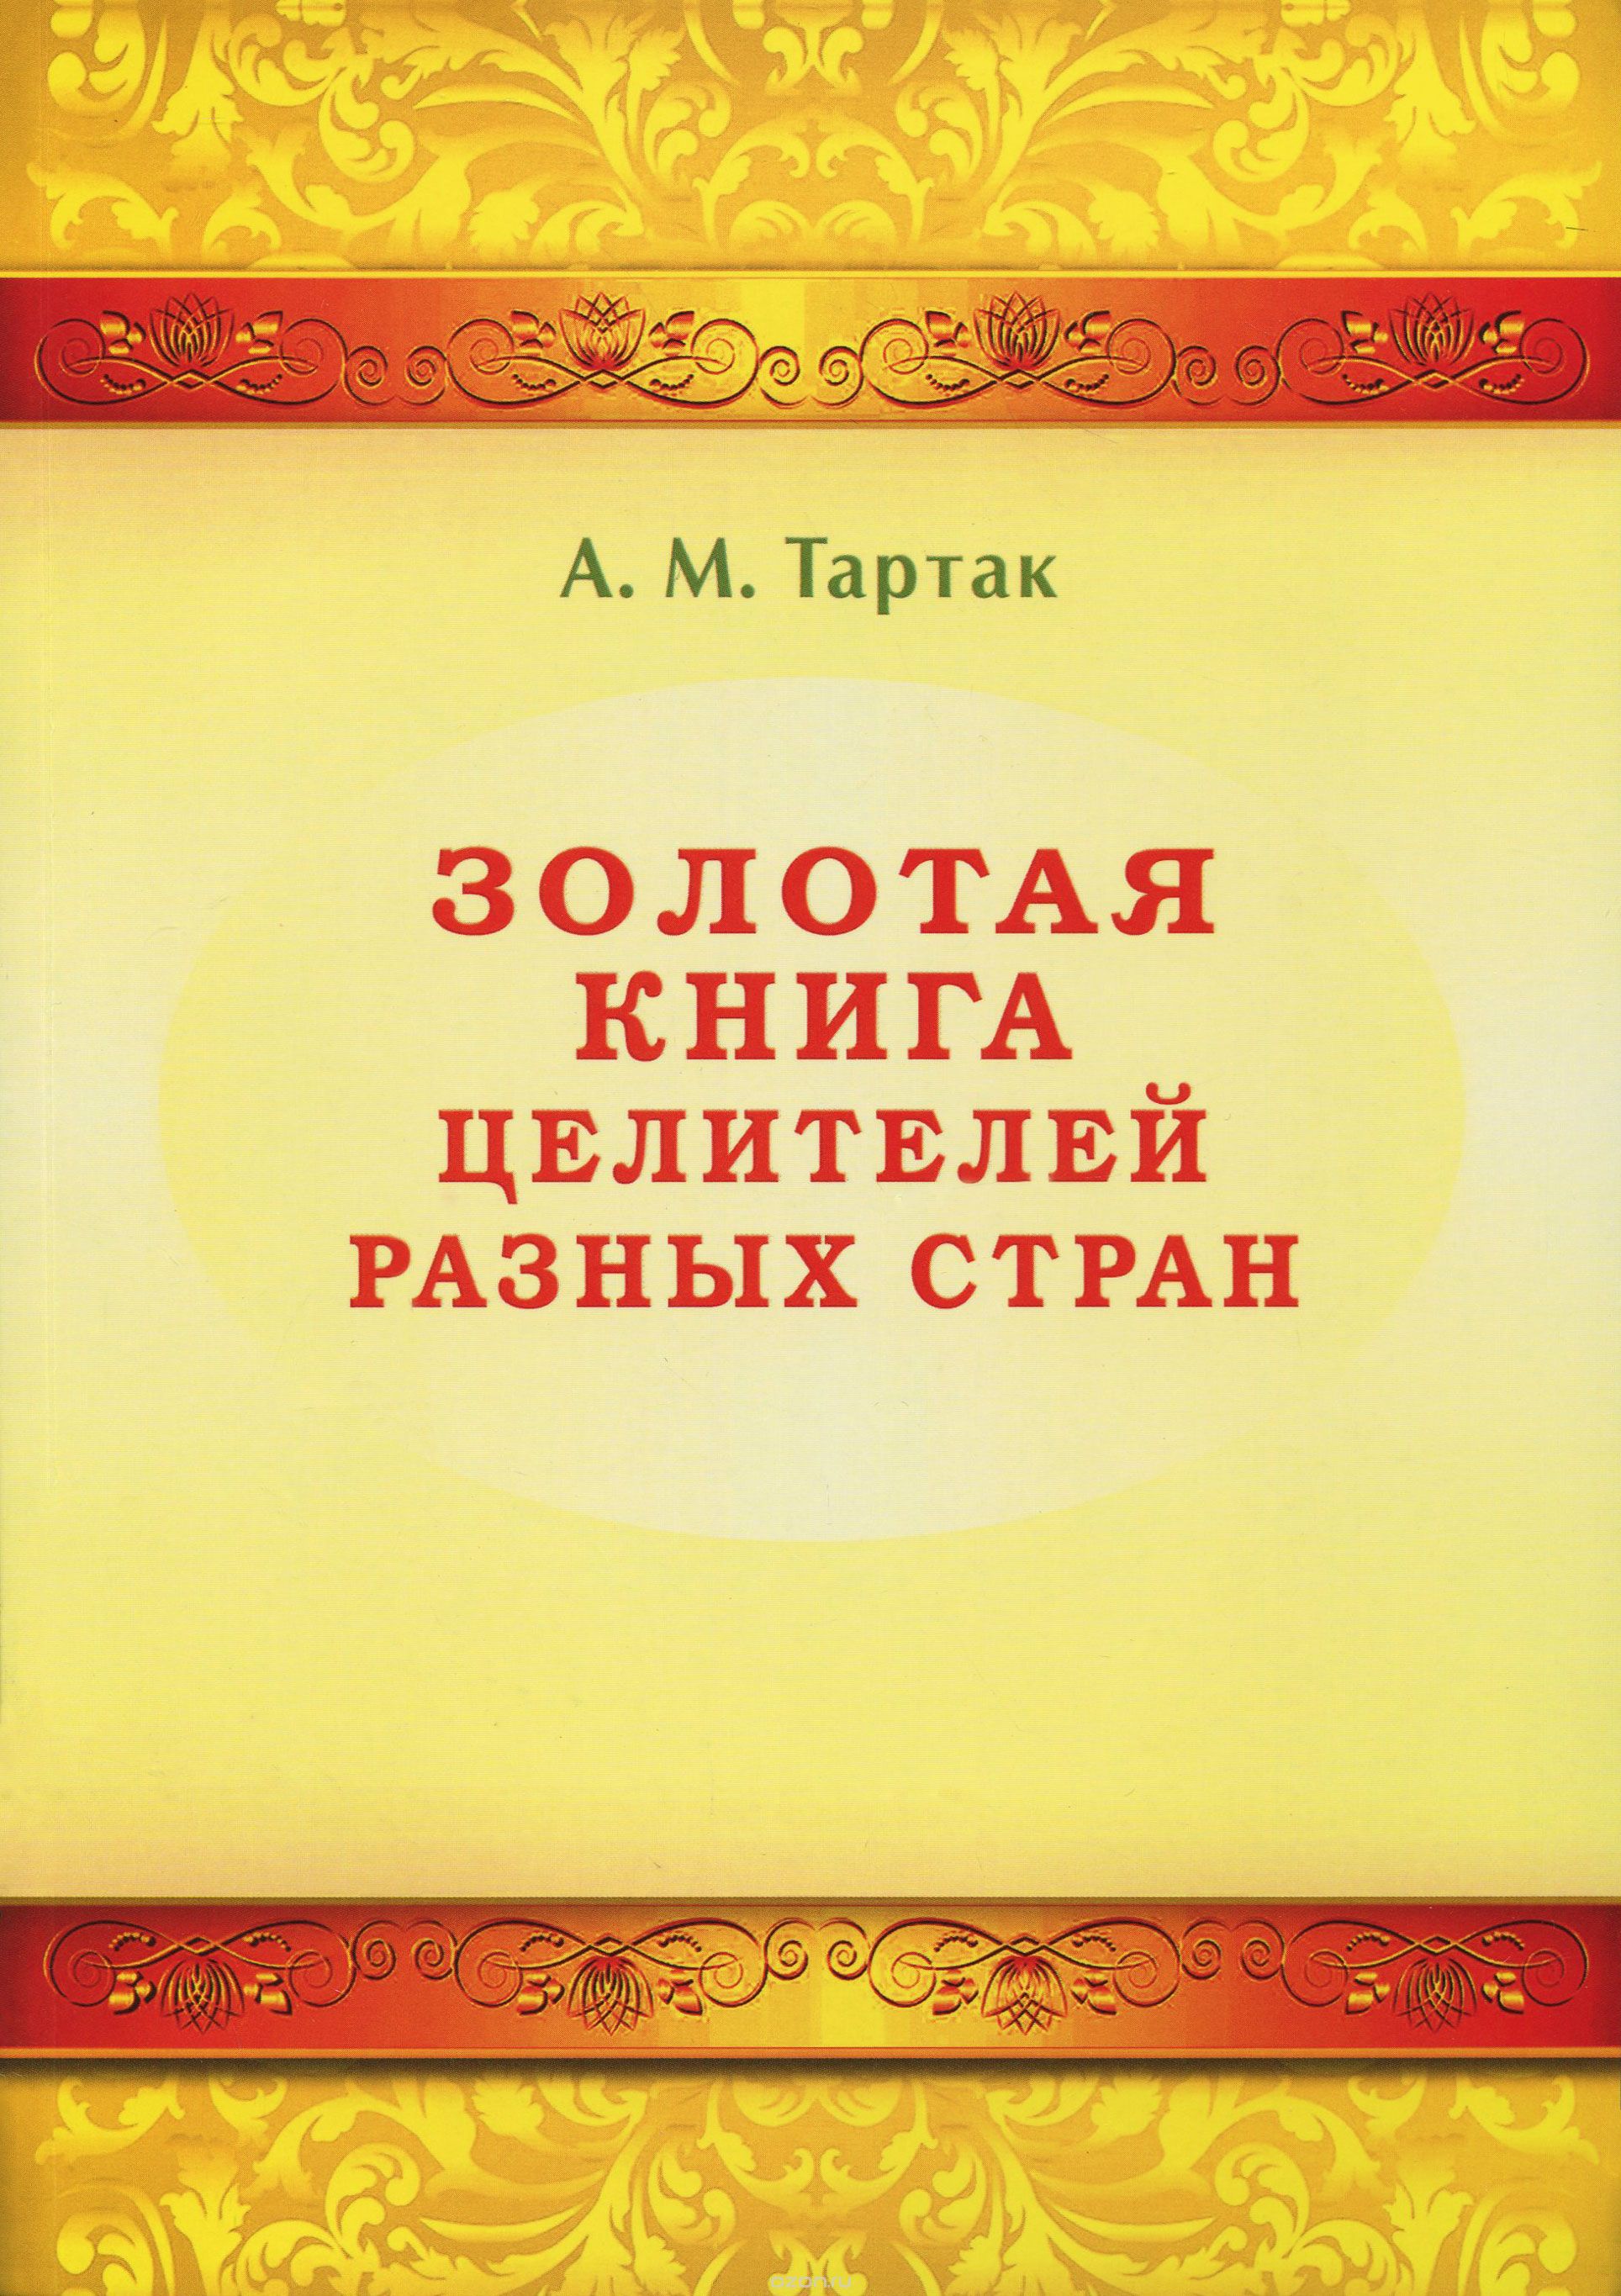 Золотая книга целителей разных стран, А. М. Тартак